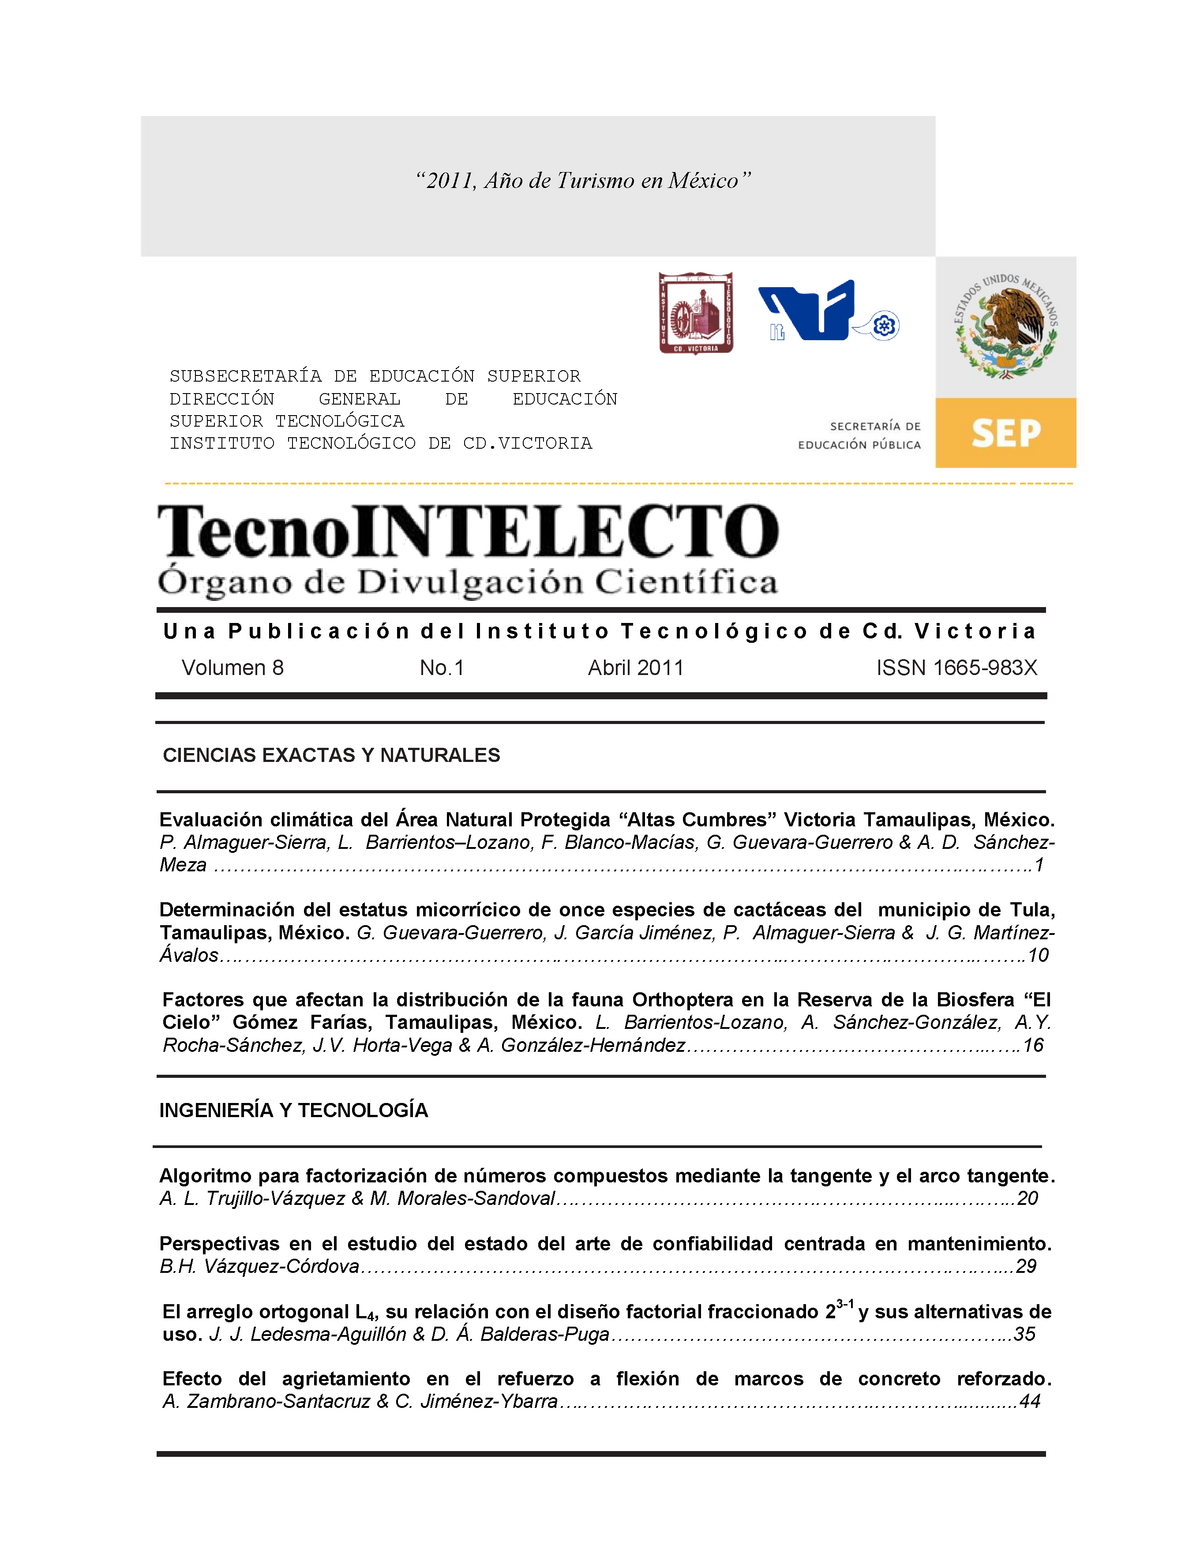 Tecno Intelecto Final Vol 8 No 1 Julio 19 11 Studocu